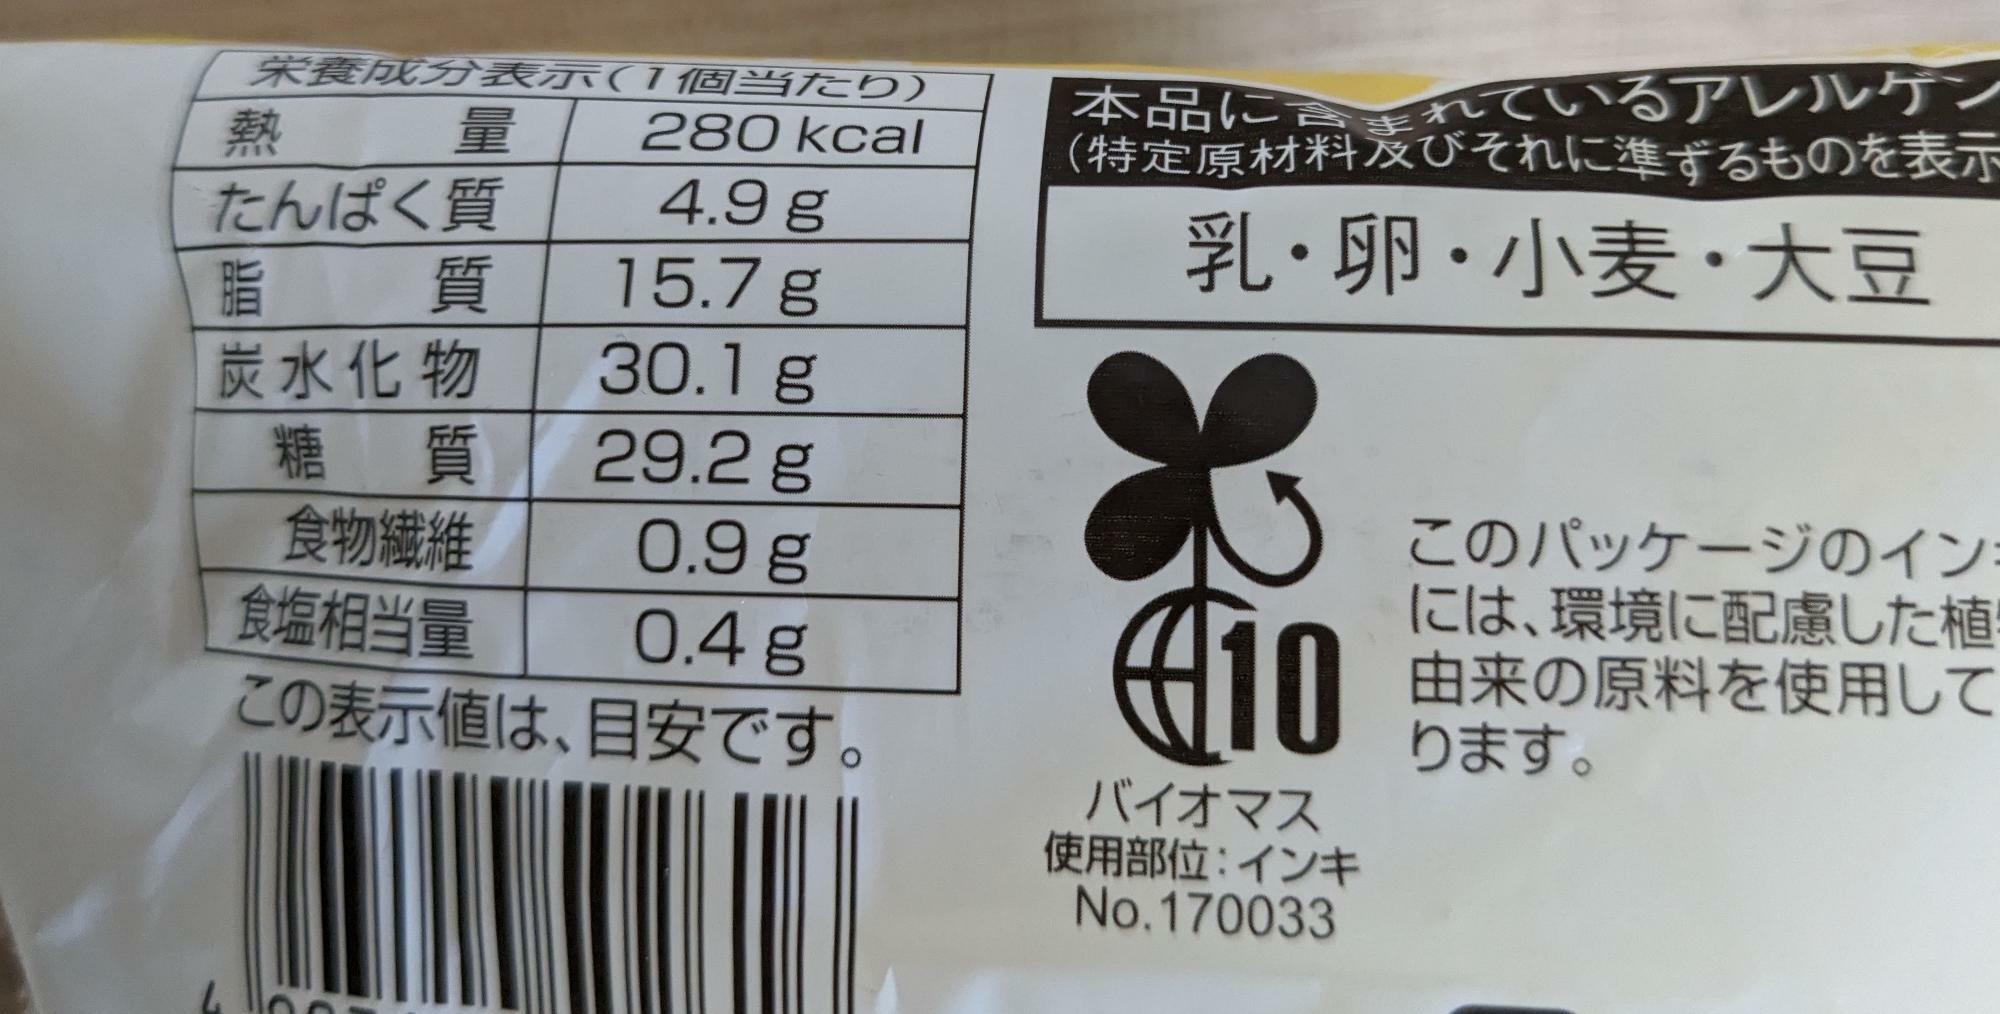 ファミリーマート西日本限定「パインアメクリームパン」栄養成分表示